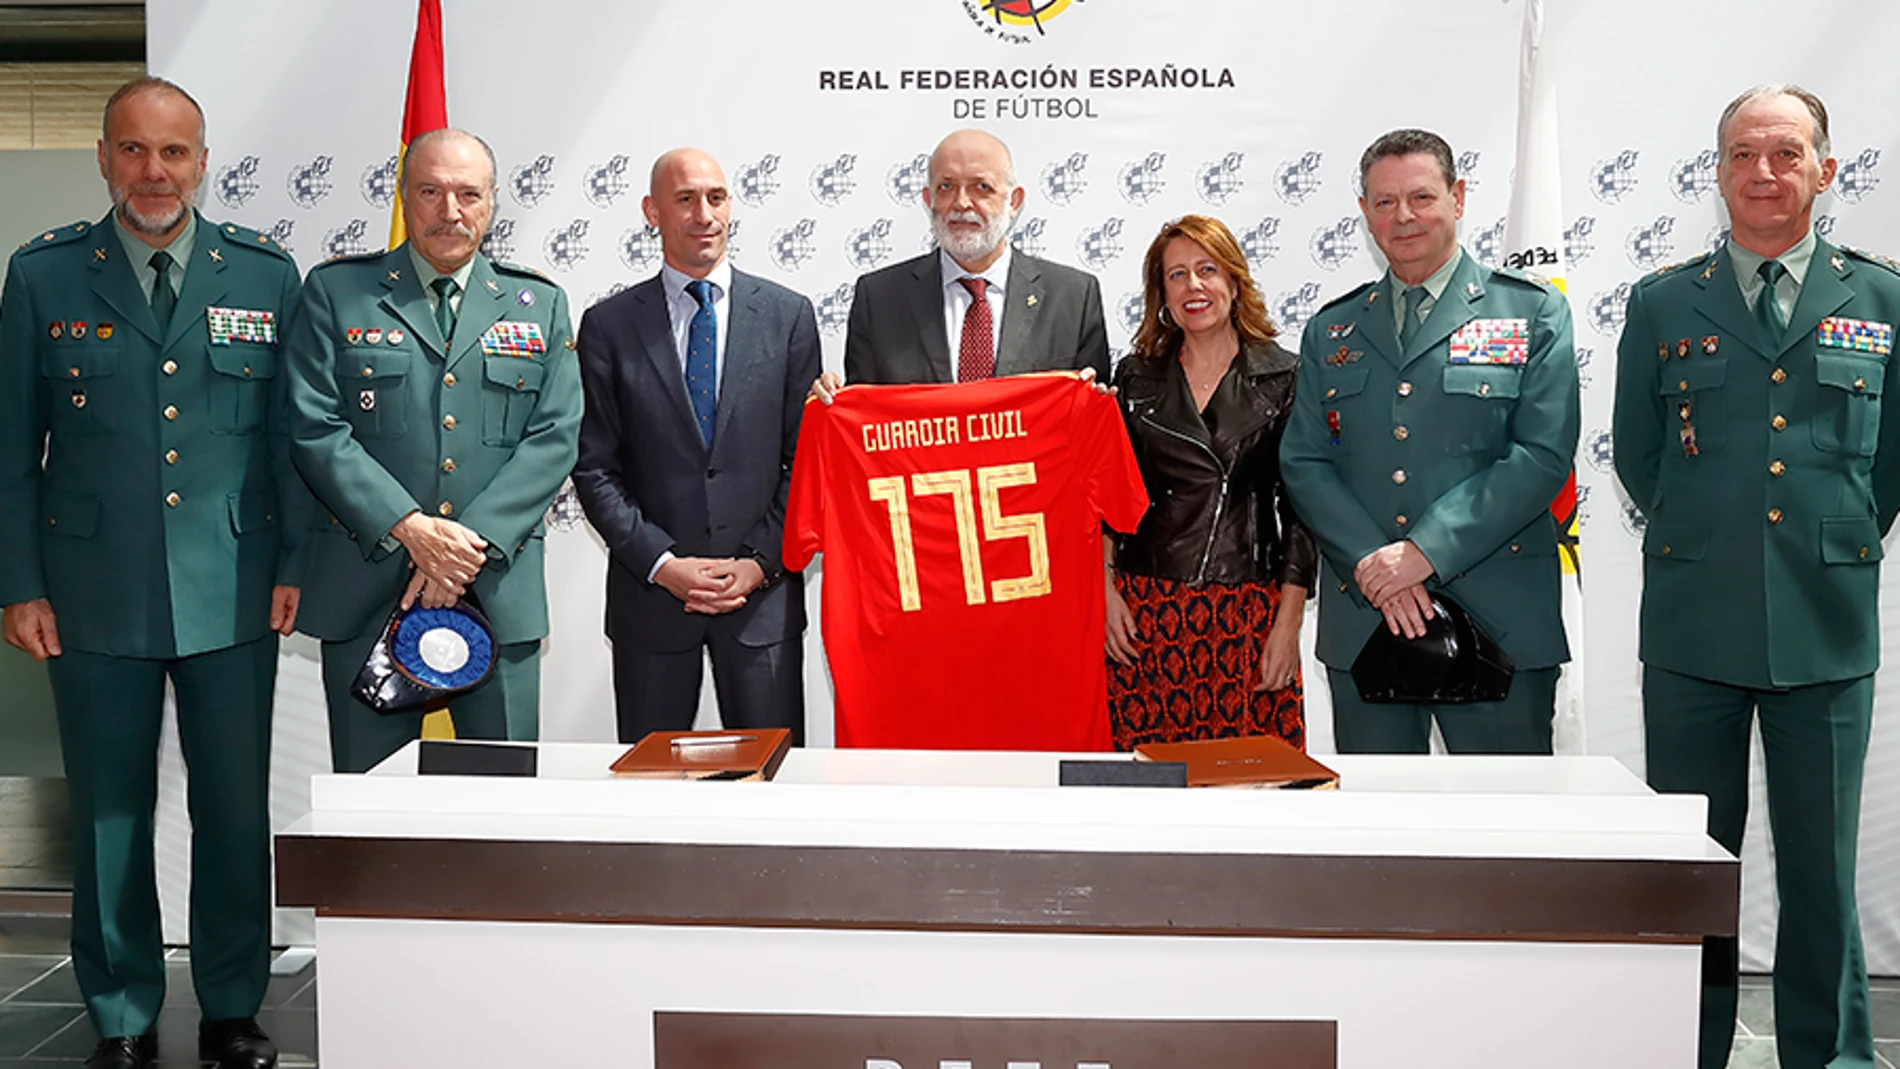 Acuerda Federación y Guardia Civil, Sefutbol.es